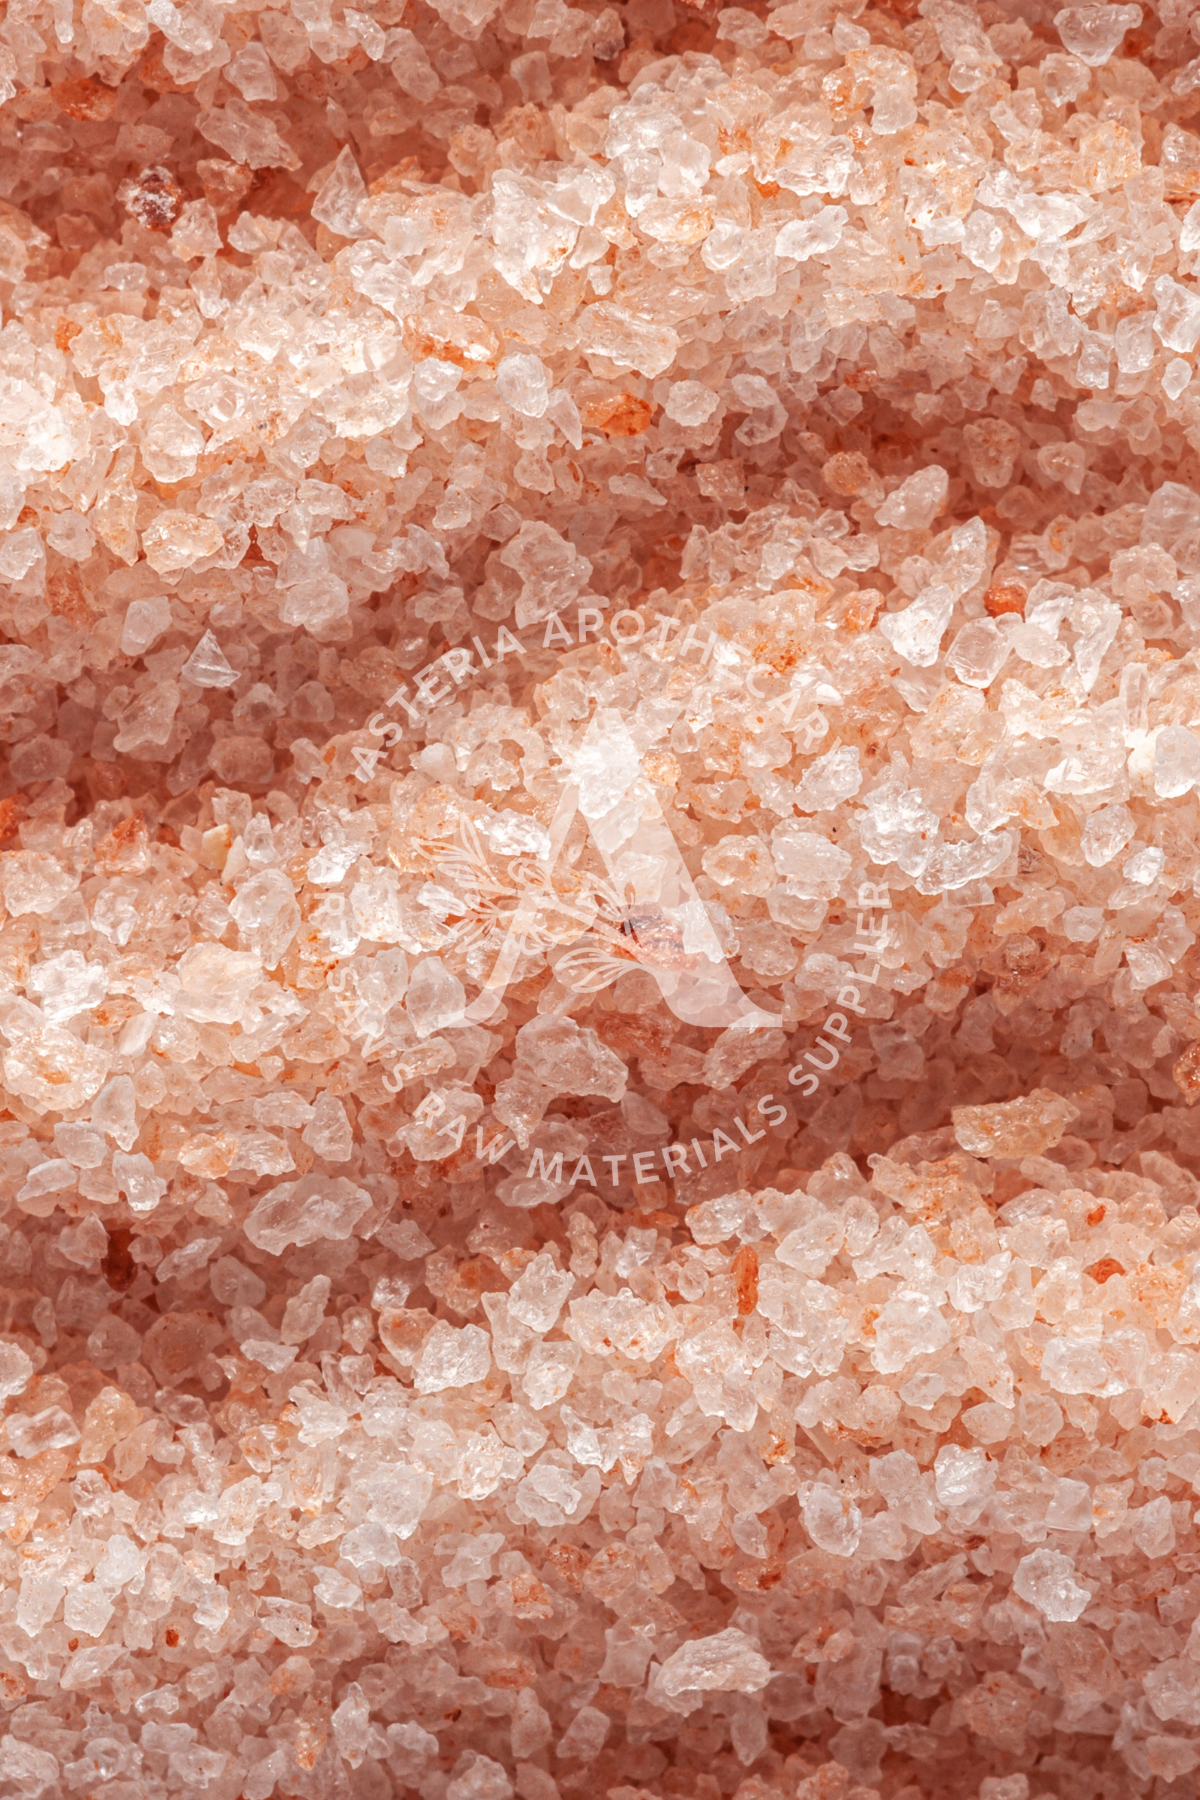 Pink Himalayan Salt | Medium Size